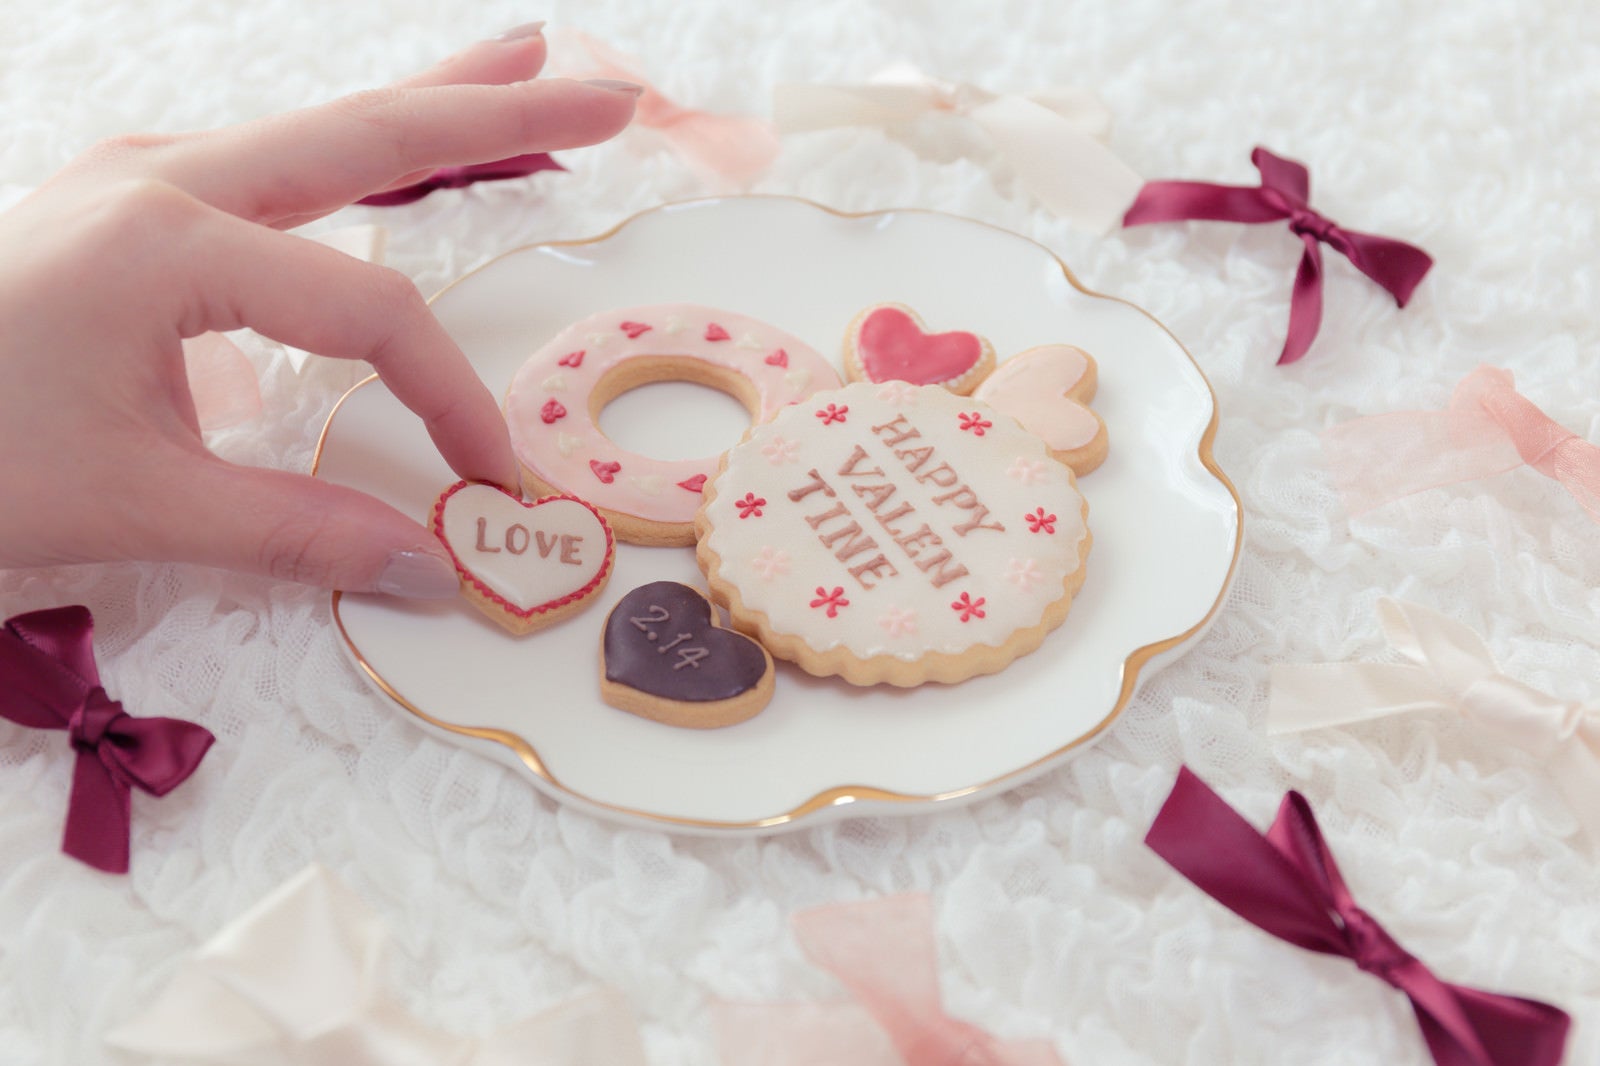 「バレンタイン「LOVE」クッキー」の写真